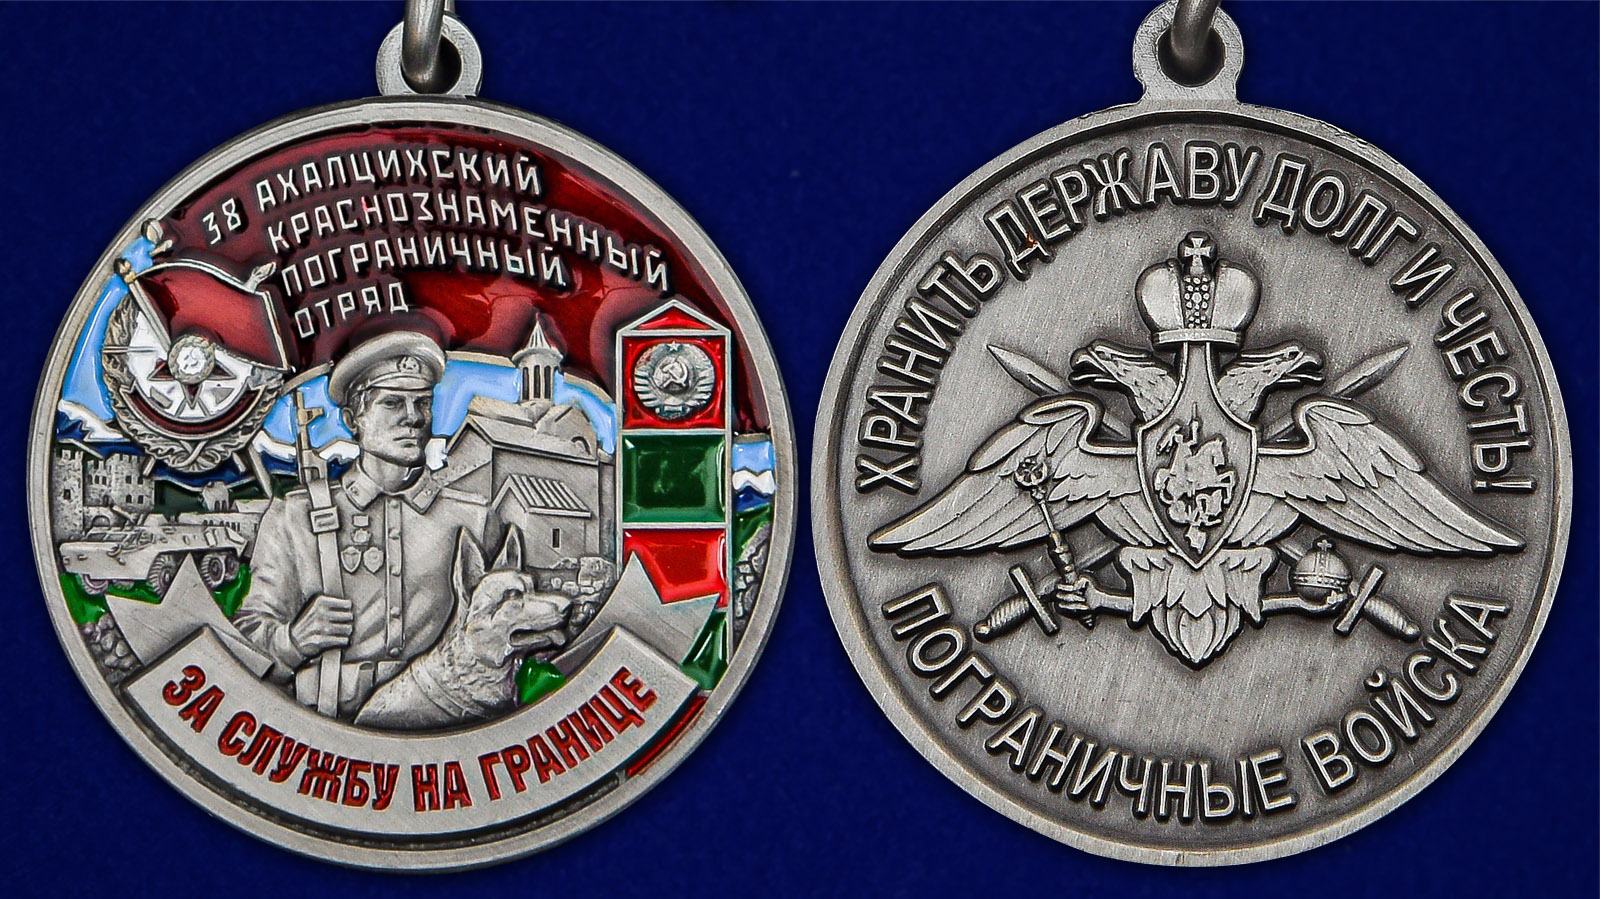 Описание медали "За службу в Ахалцихском пограничном отряде"